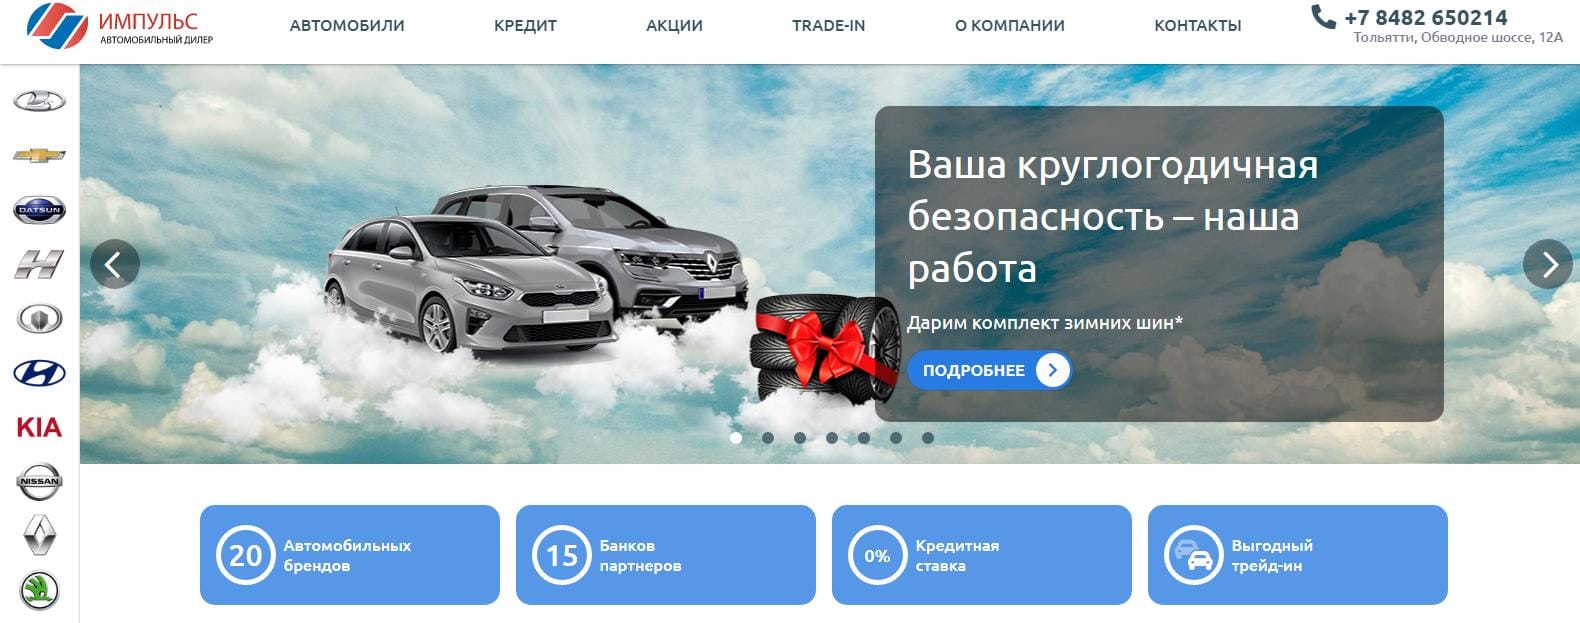 Сайты автомобилей тольятти